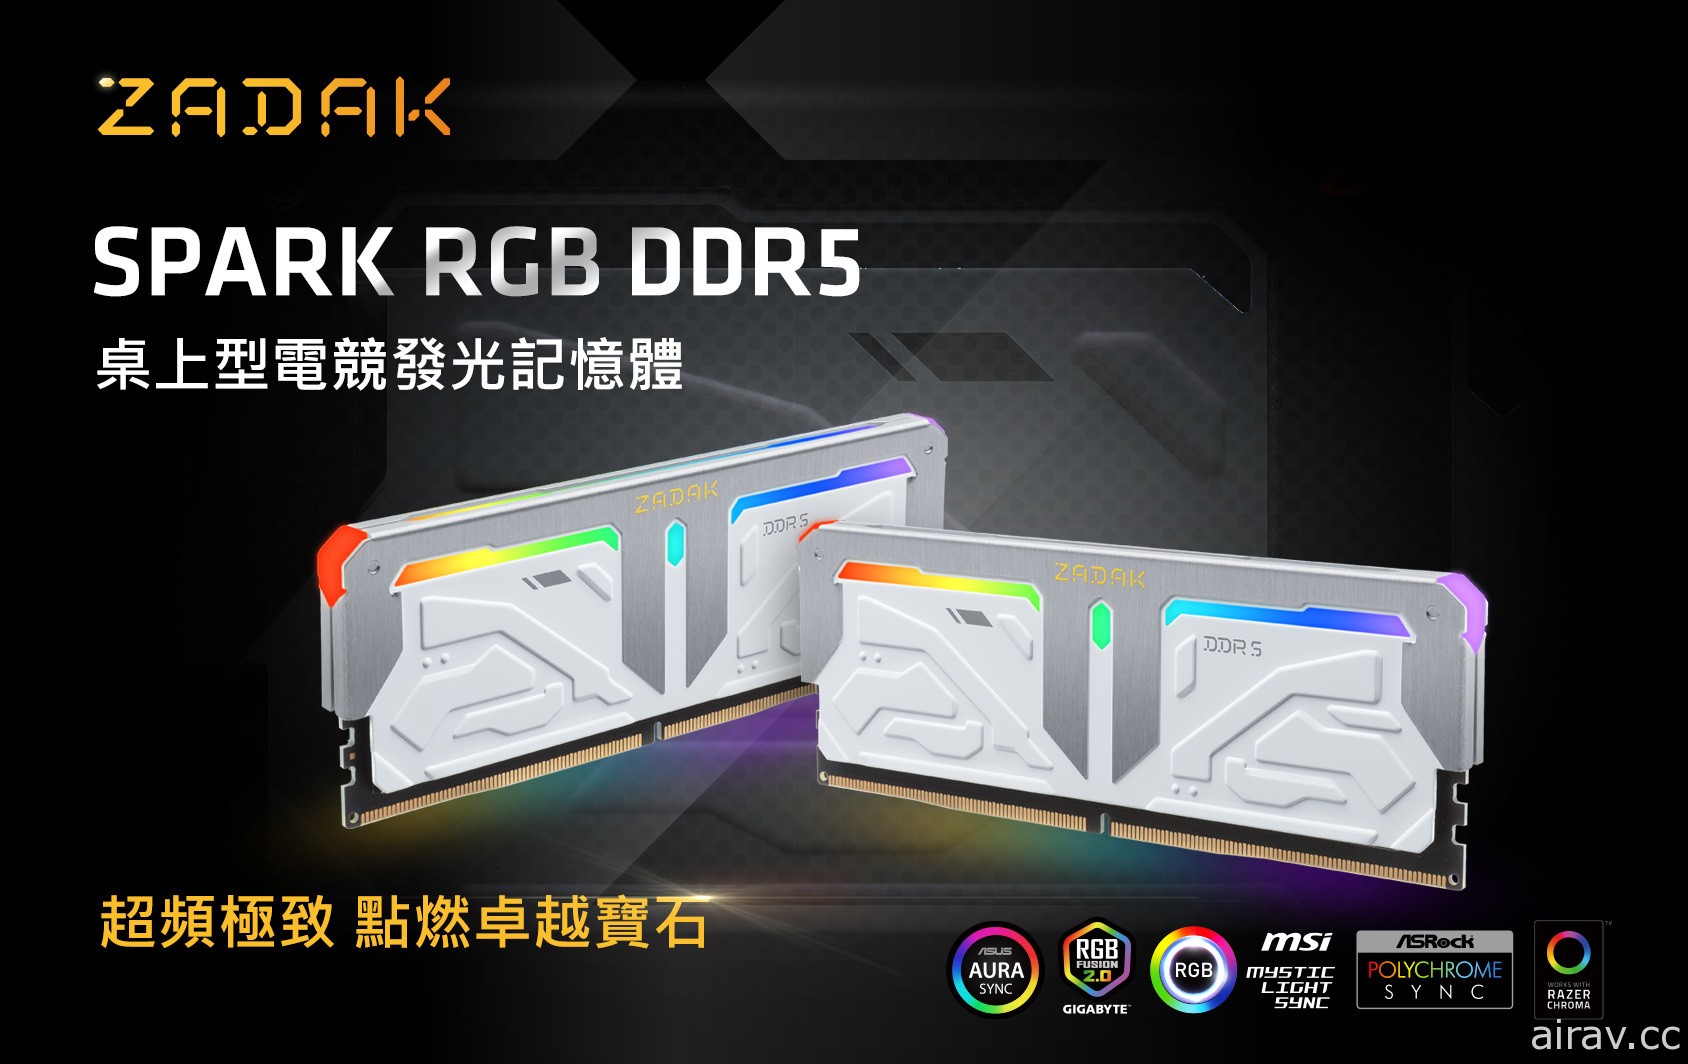 宇瞻推出 SPARK RGB DDR5 超頻記憶體